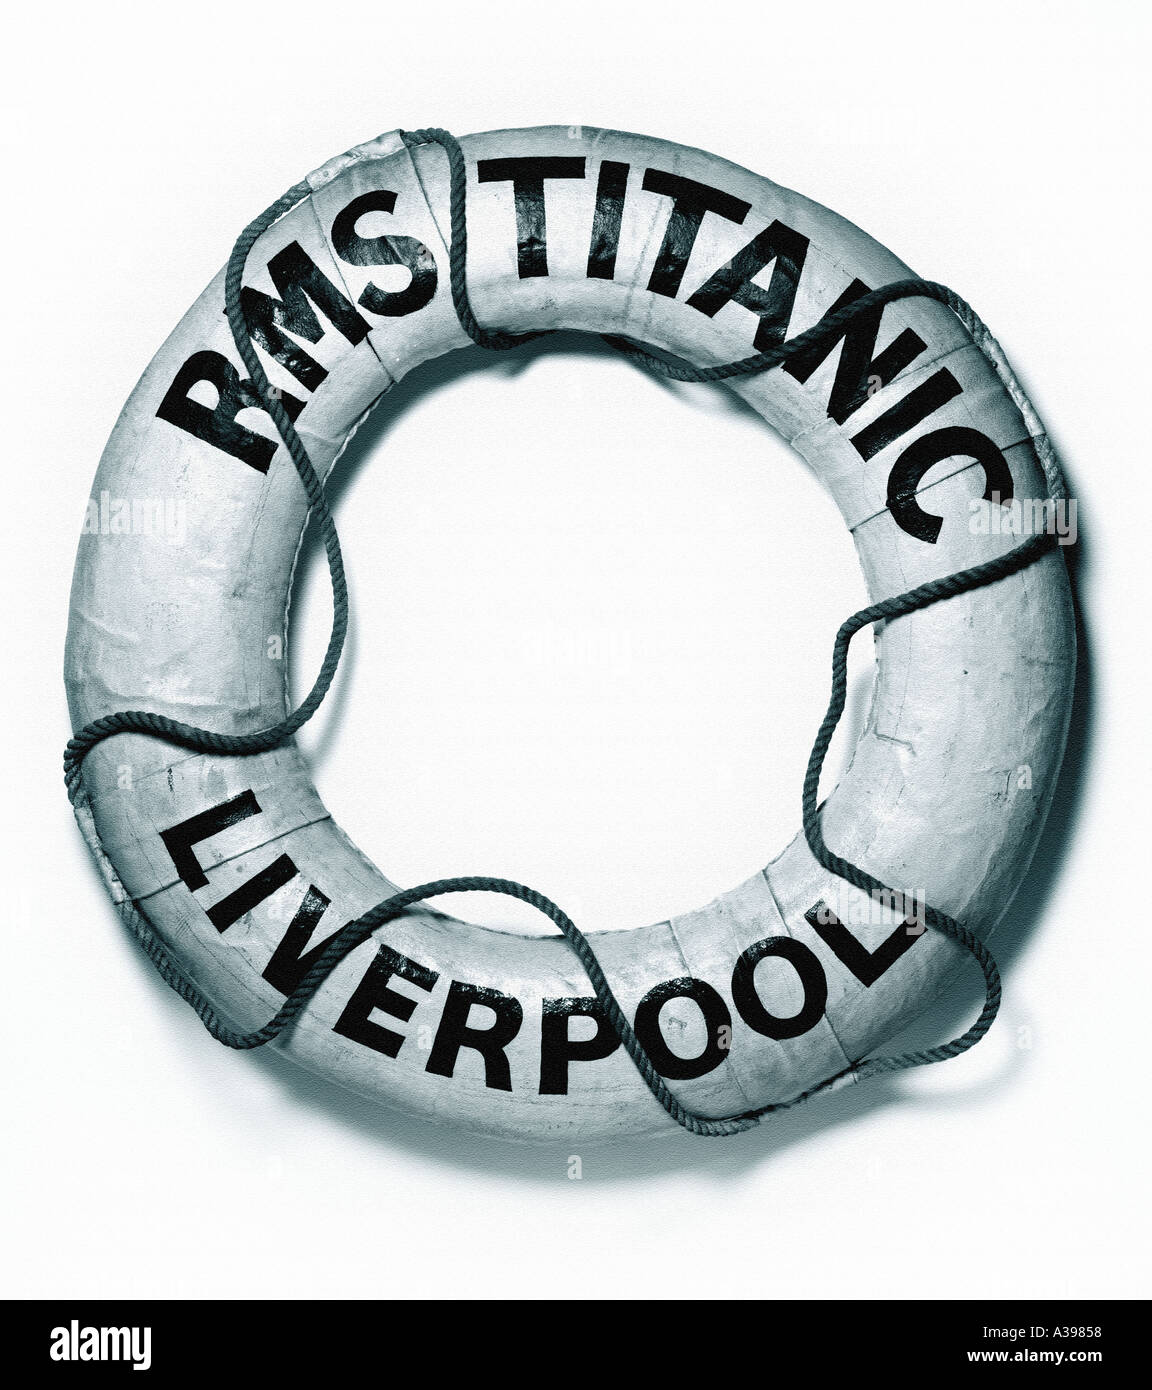 titanic lifeboat ring Stock Photo - Alamy